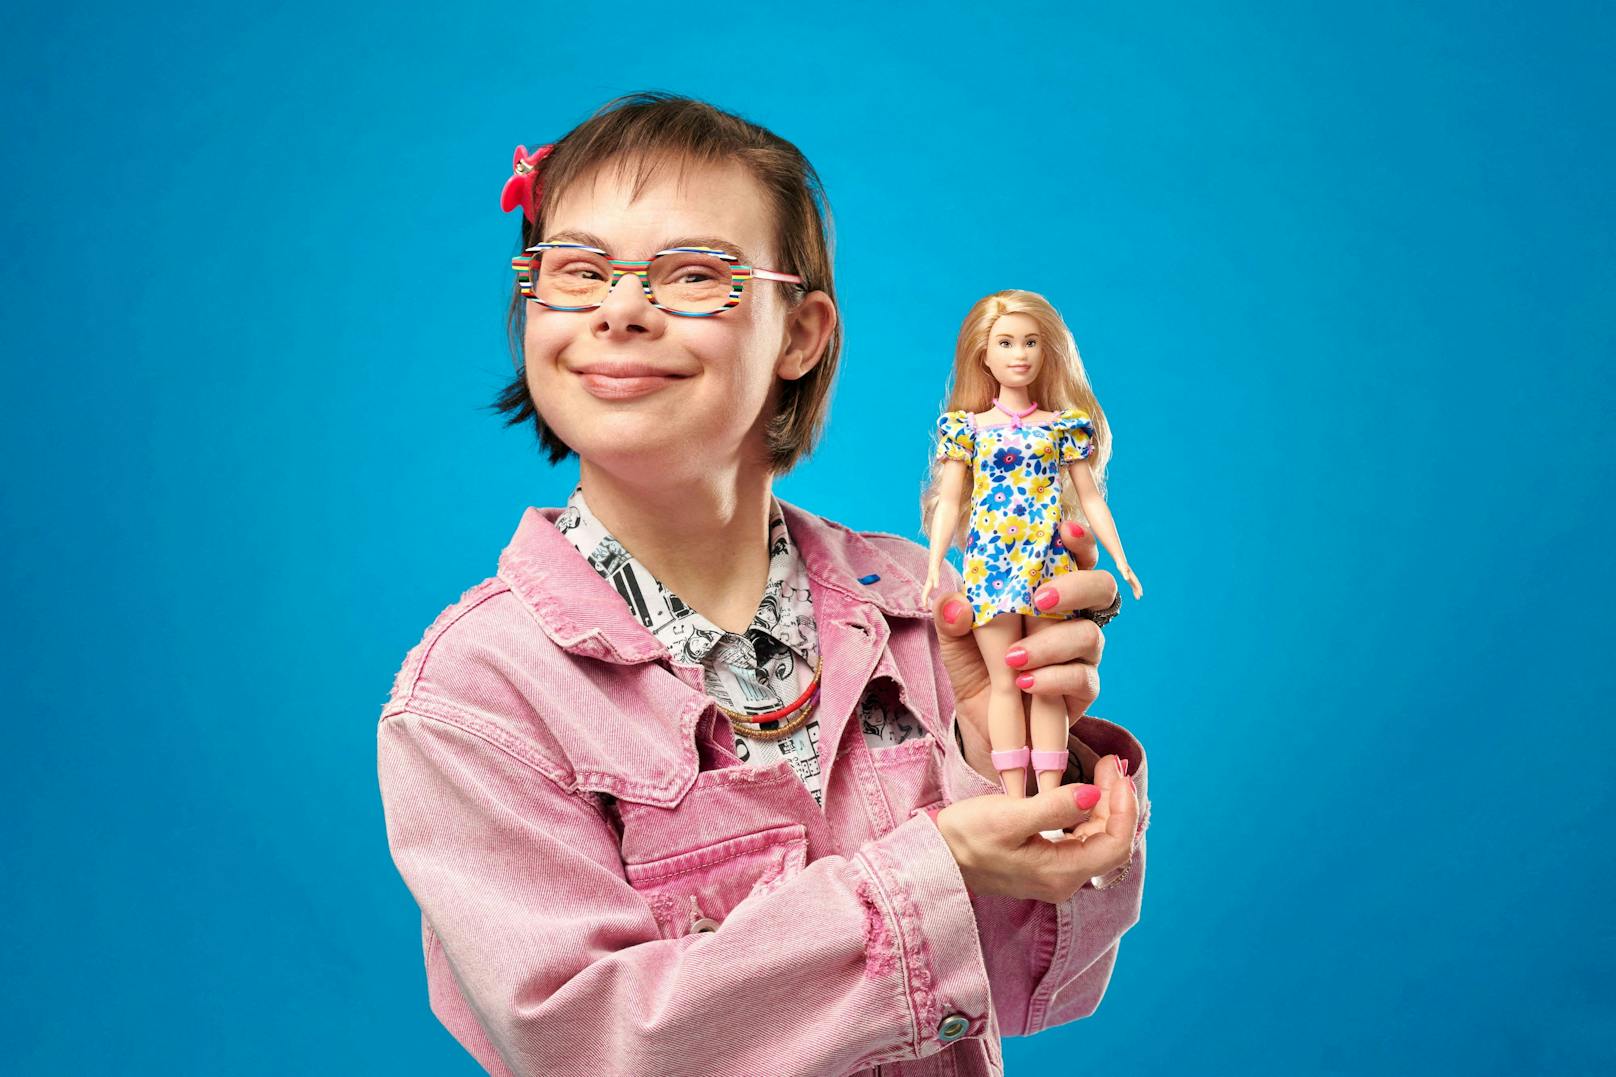 Mattel stellt erste Barbie-Puppe mit Downsyndrom vor